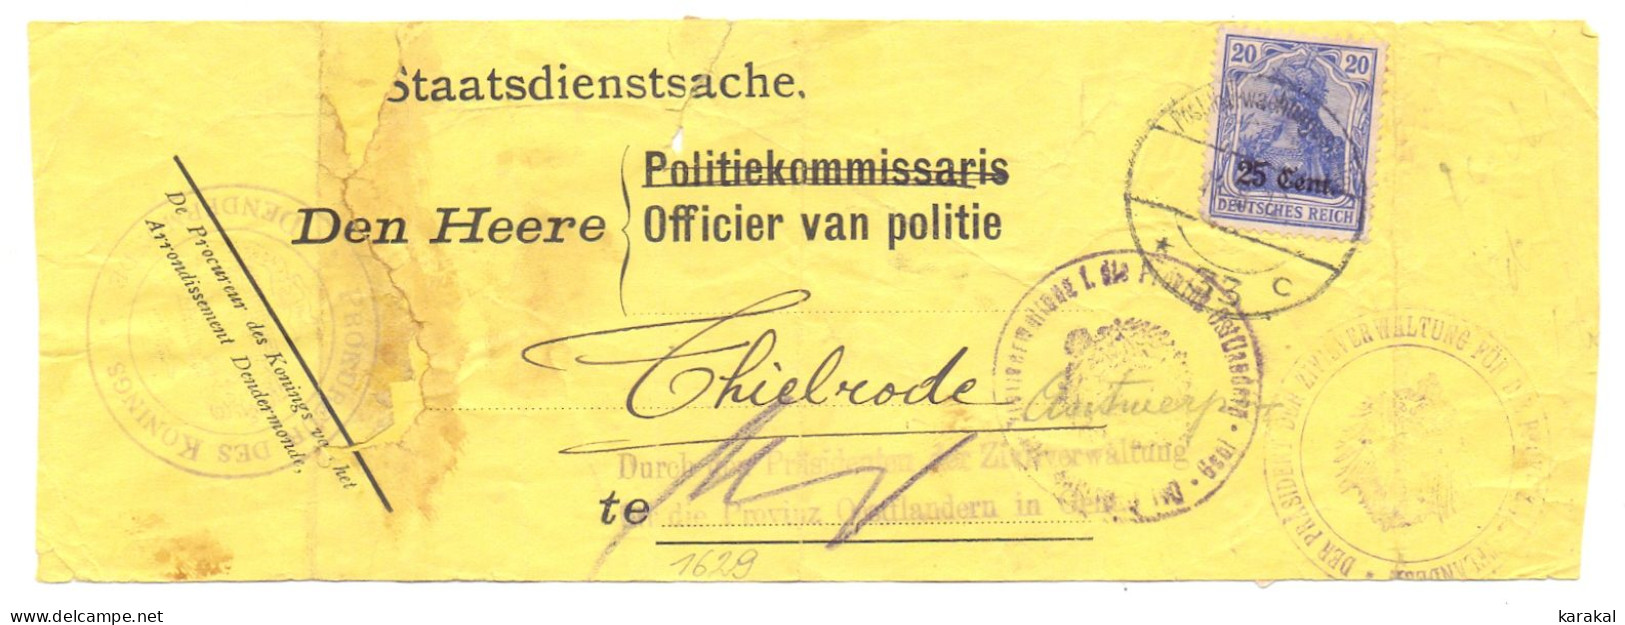 Belgique Occupation OC31 Germania 25c Bande Journal (?) Procureur Du Roi Procureur Des Konings Thielrode Temse - OC26/37 Etappengebiet